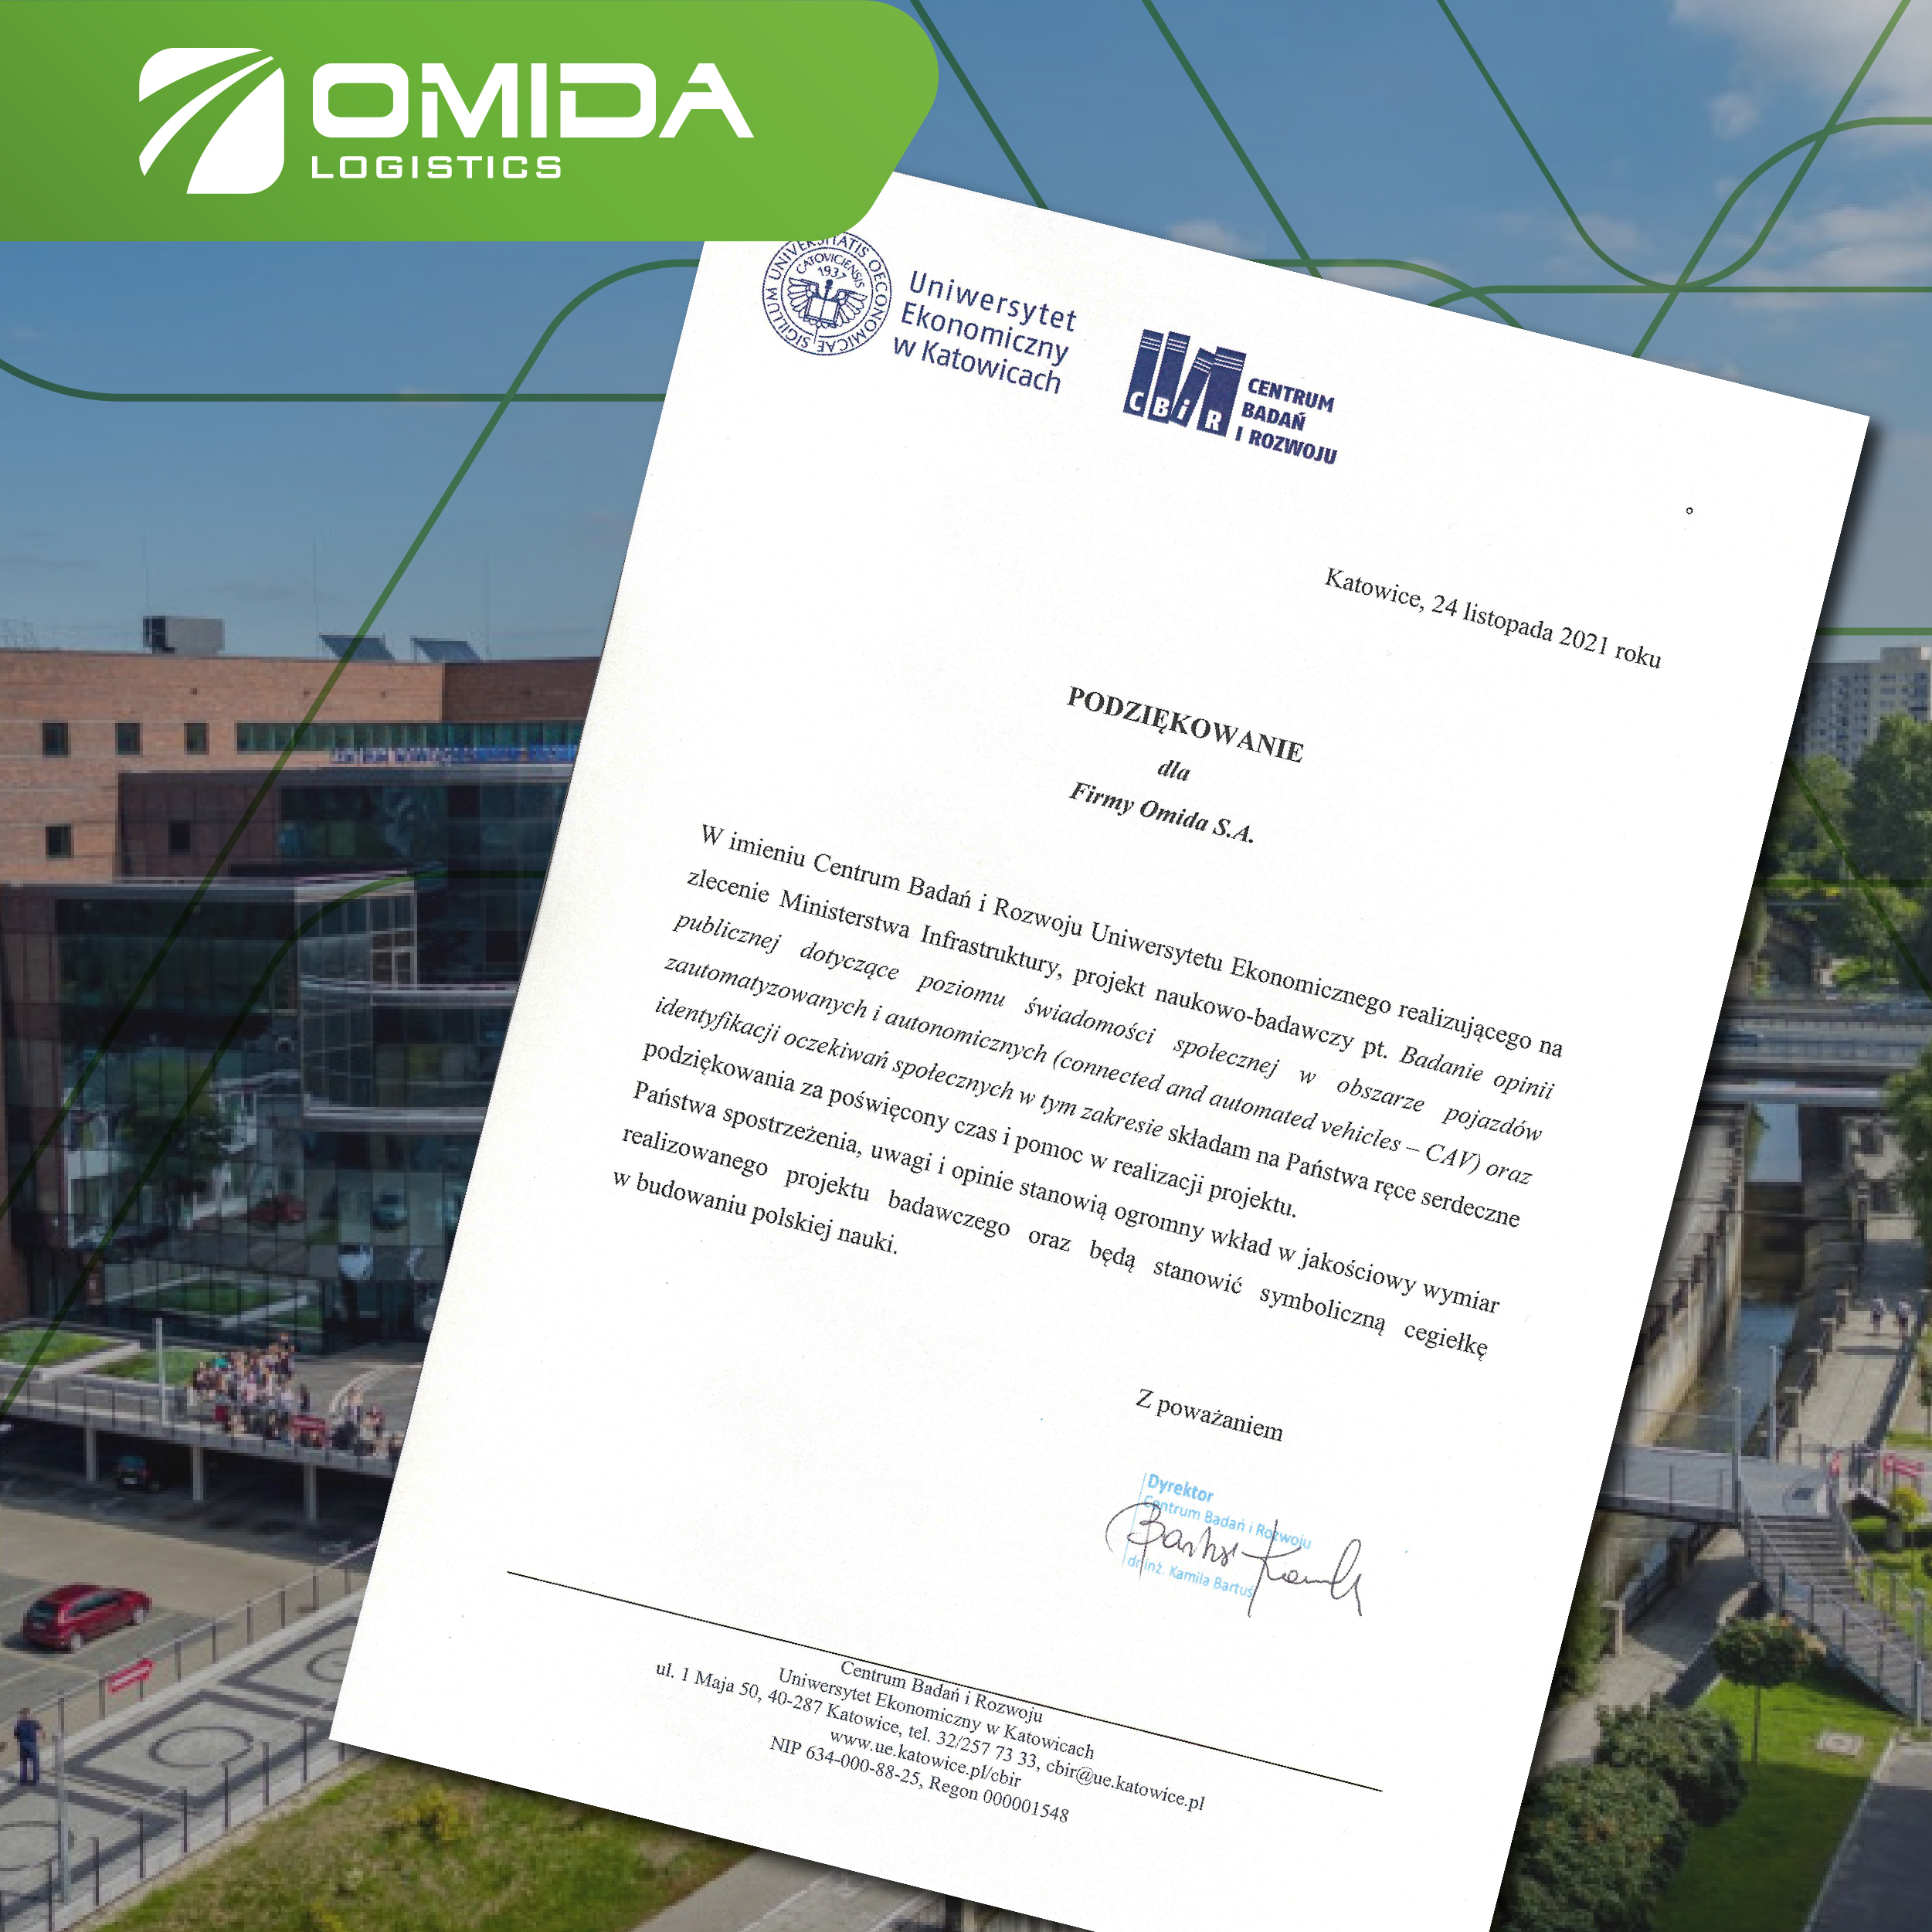 Omida wspiera realizację projektu naukowo-badawczego | Omida Logistics